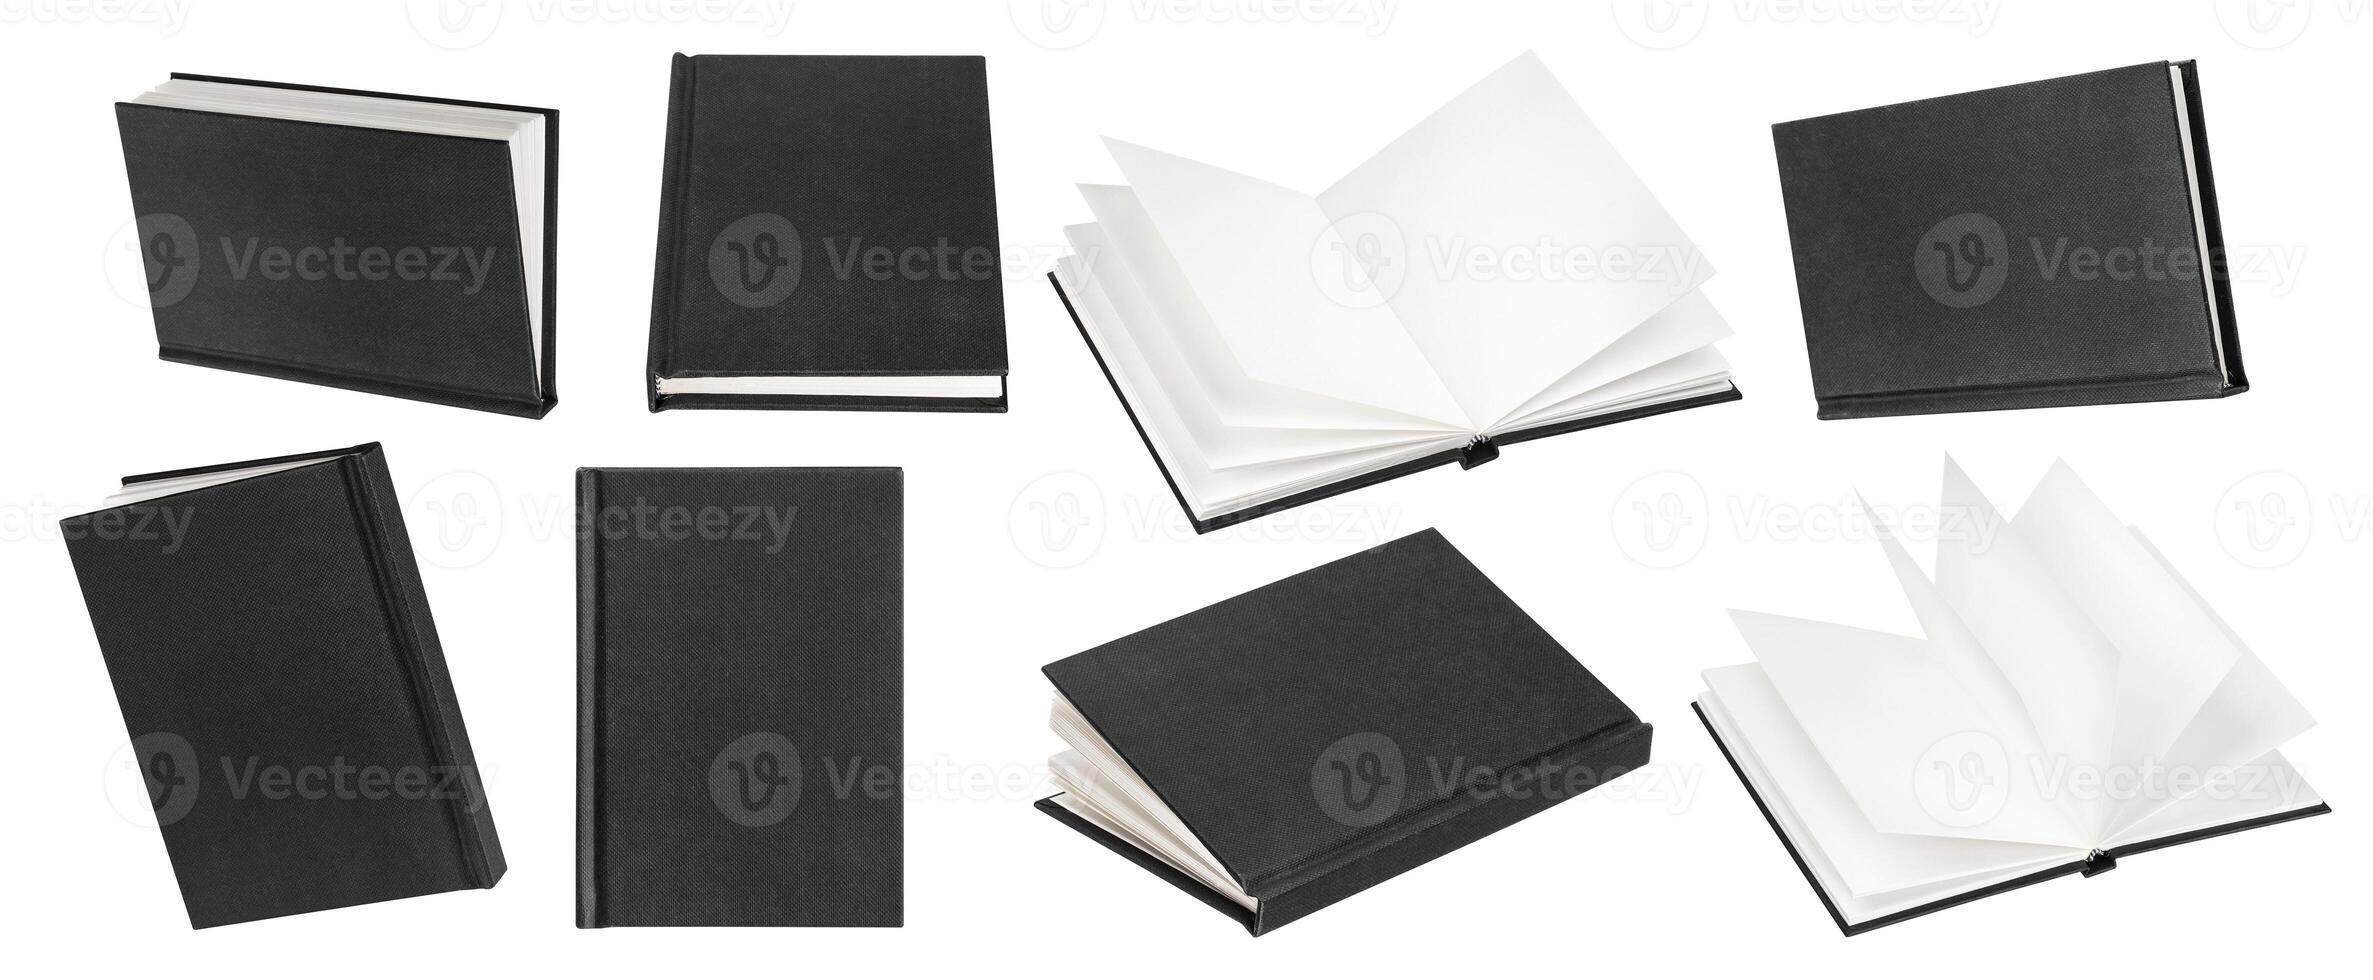 Preto livro zombar acima isolado em branco fundo foto